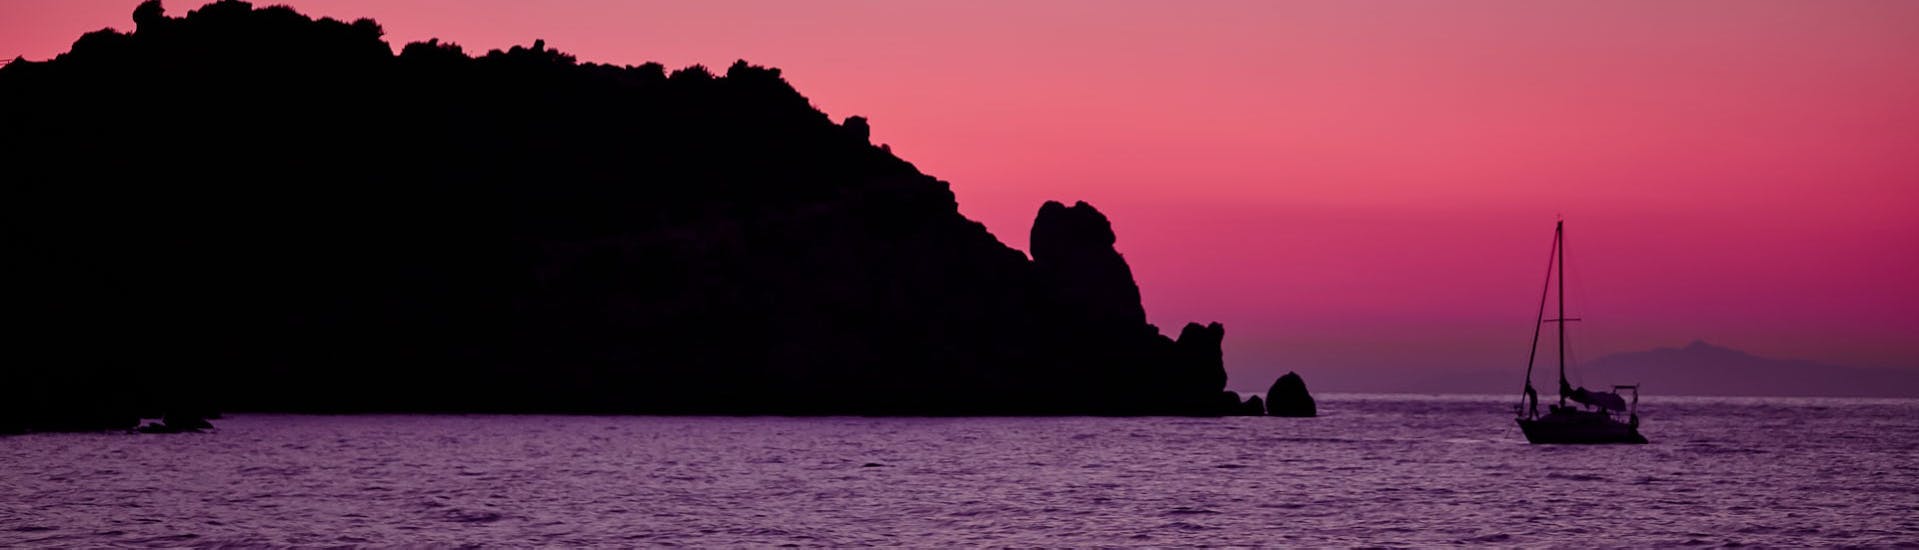 Vue sur l'île de Giglio au coucher du soleil lors de la balade en bateau vers les îles de Giglio et Giannutri avec Toscana Mini Crociere.